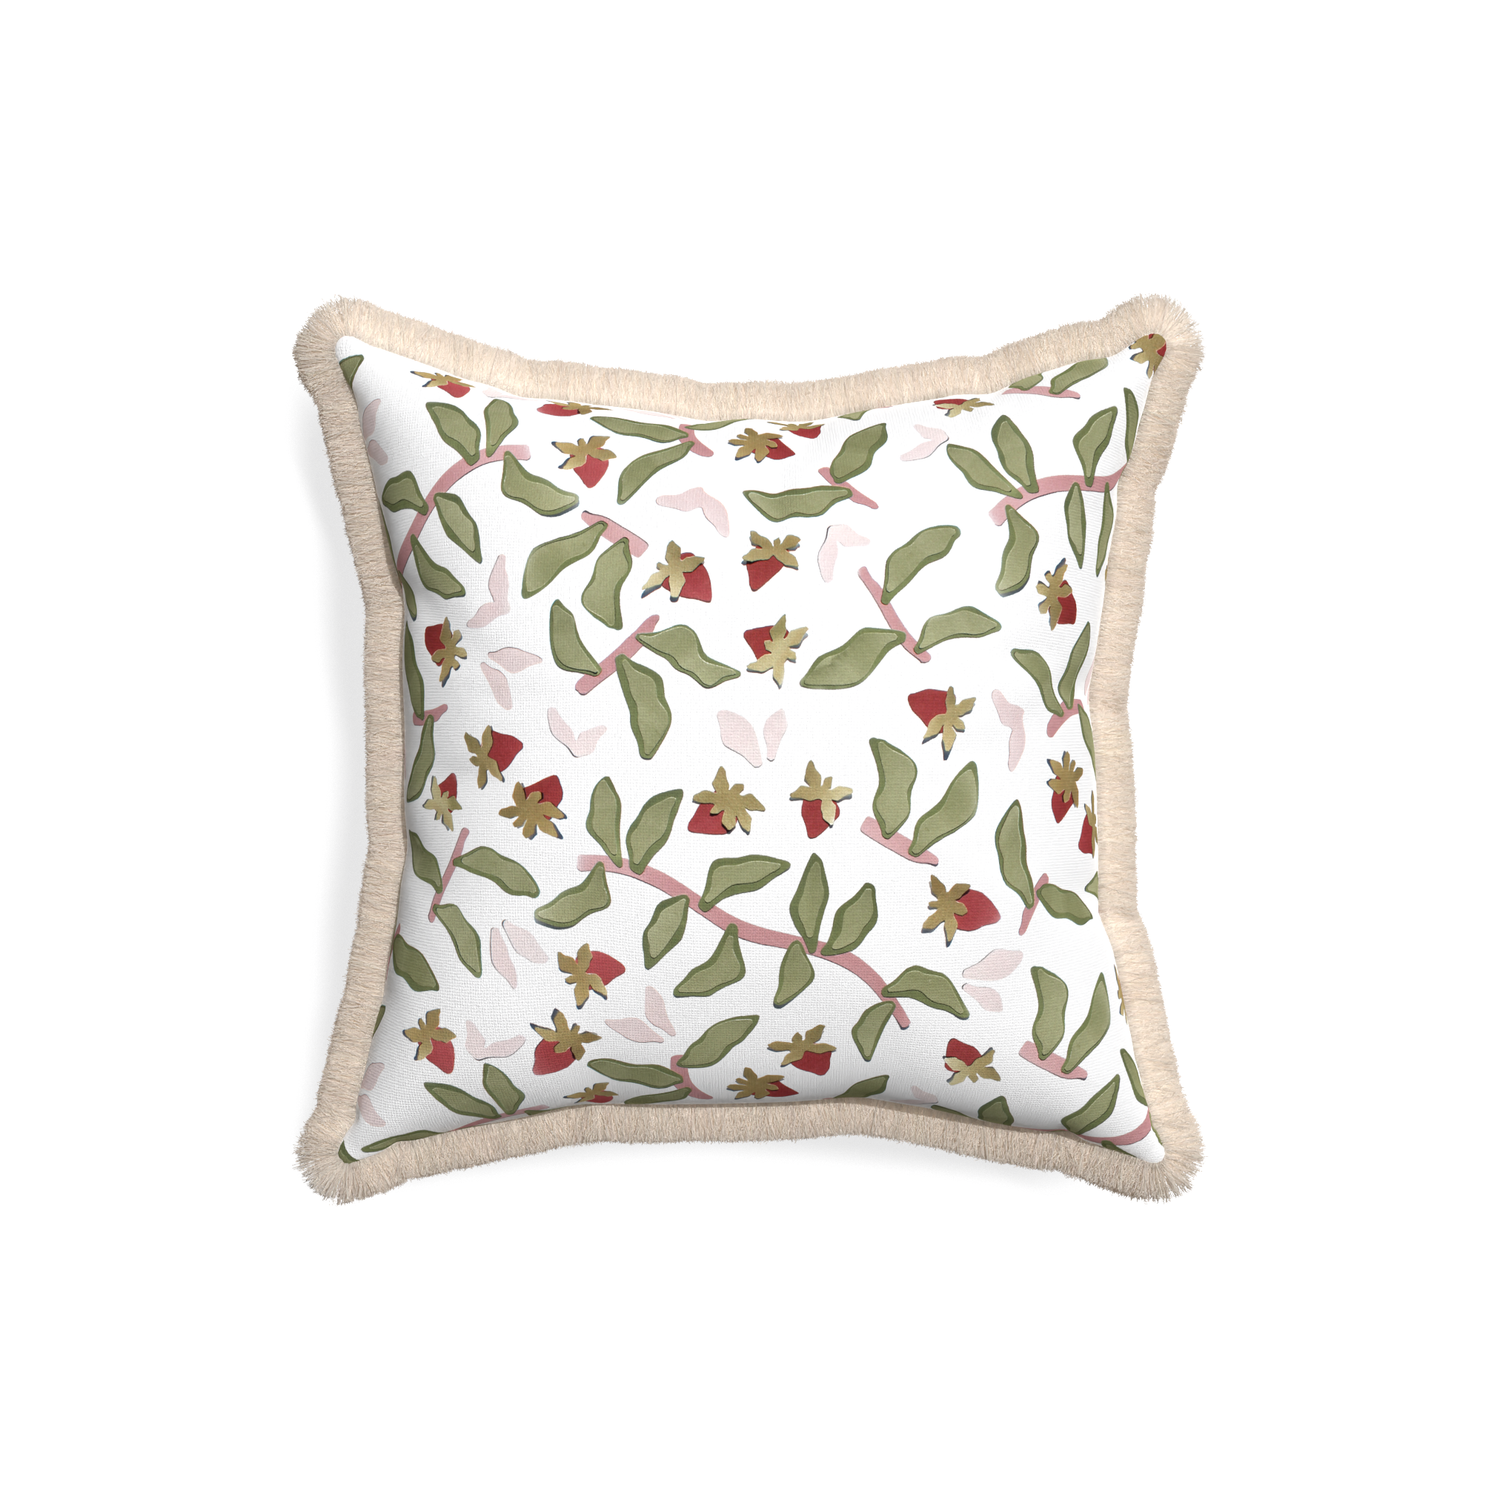 18-square nellie custom strawberry & botanicalpillow with cream fringe on white background